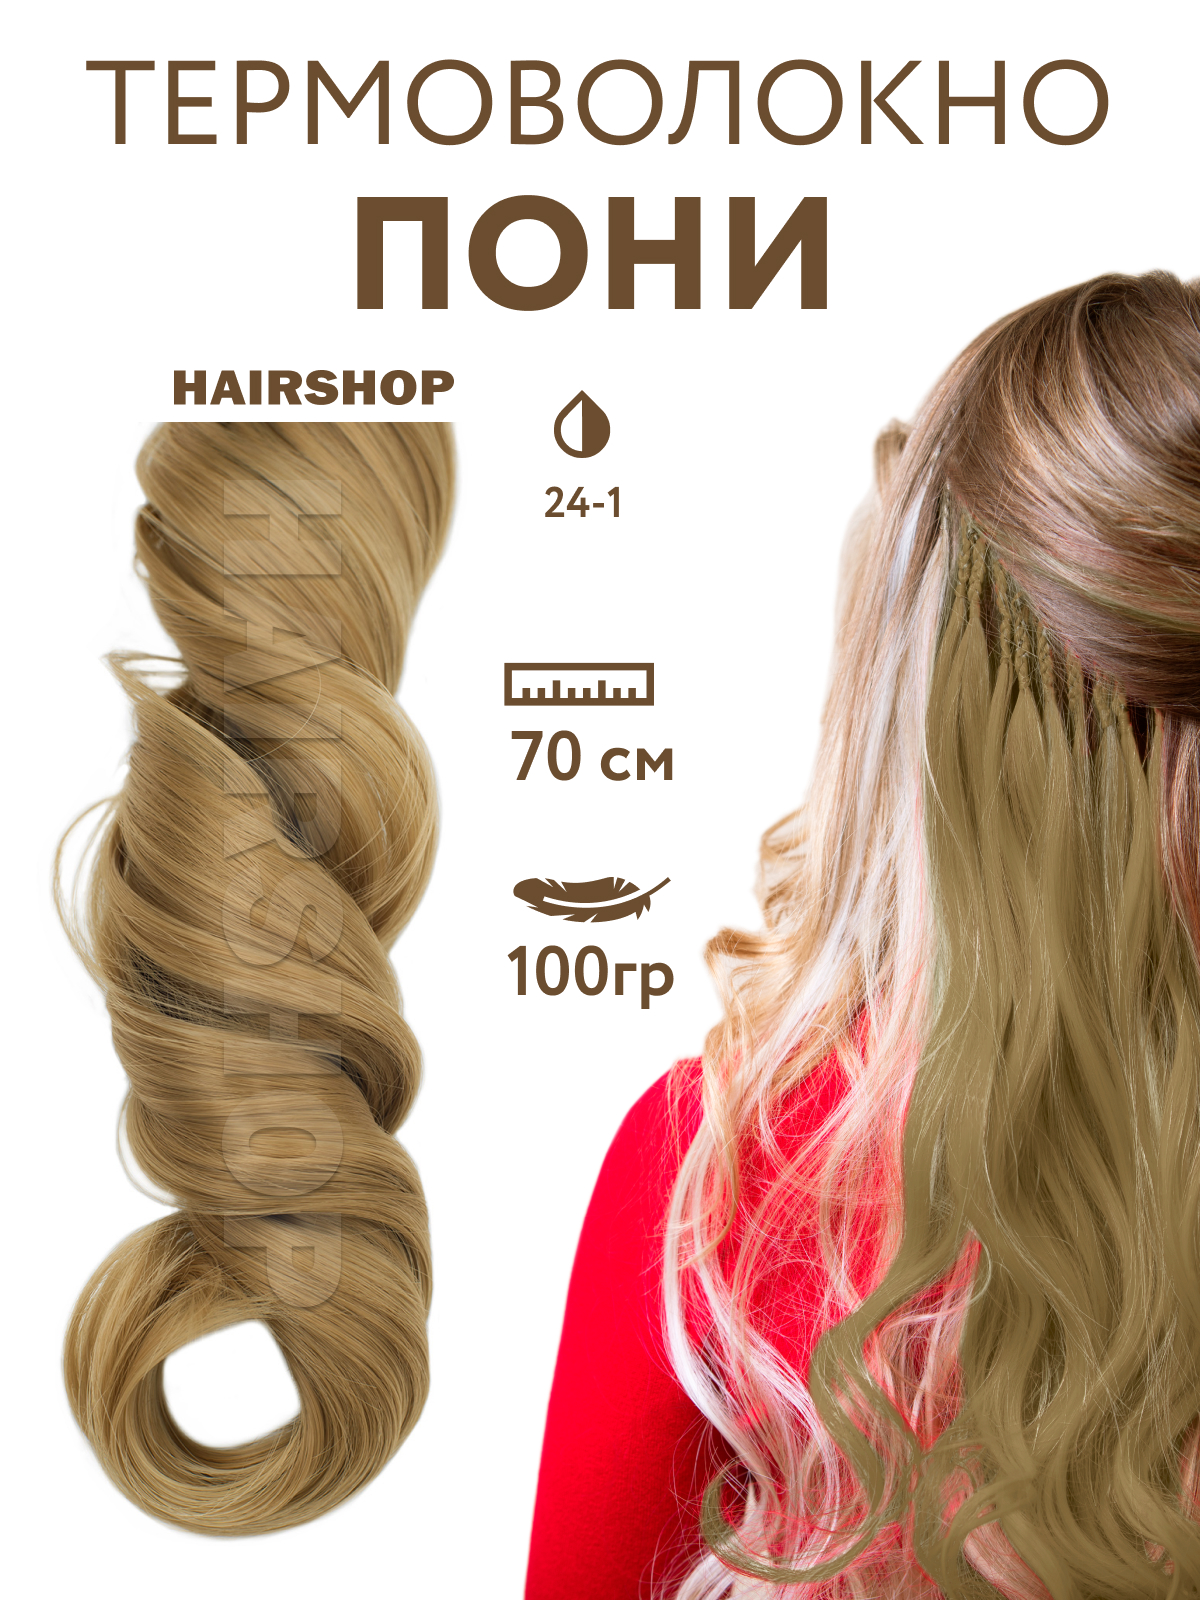 Канекалон HAIRSHOP Пони HairUp для точечного афронаращивания 24-1 Светло-русый 1,4м канекалон hairshop пони hairup для точечного афронаращивания средне русый 1 4м